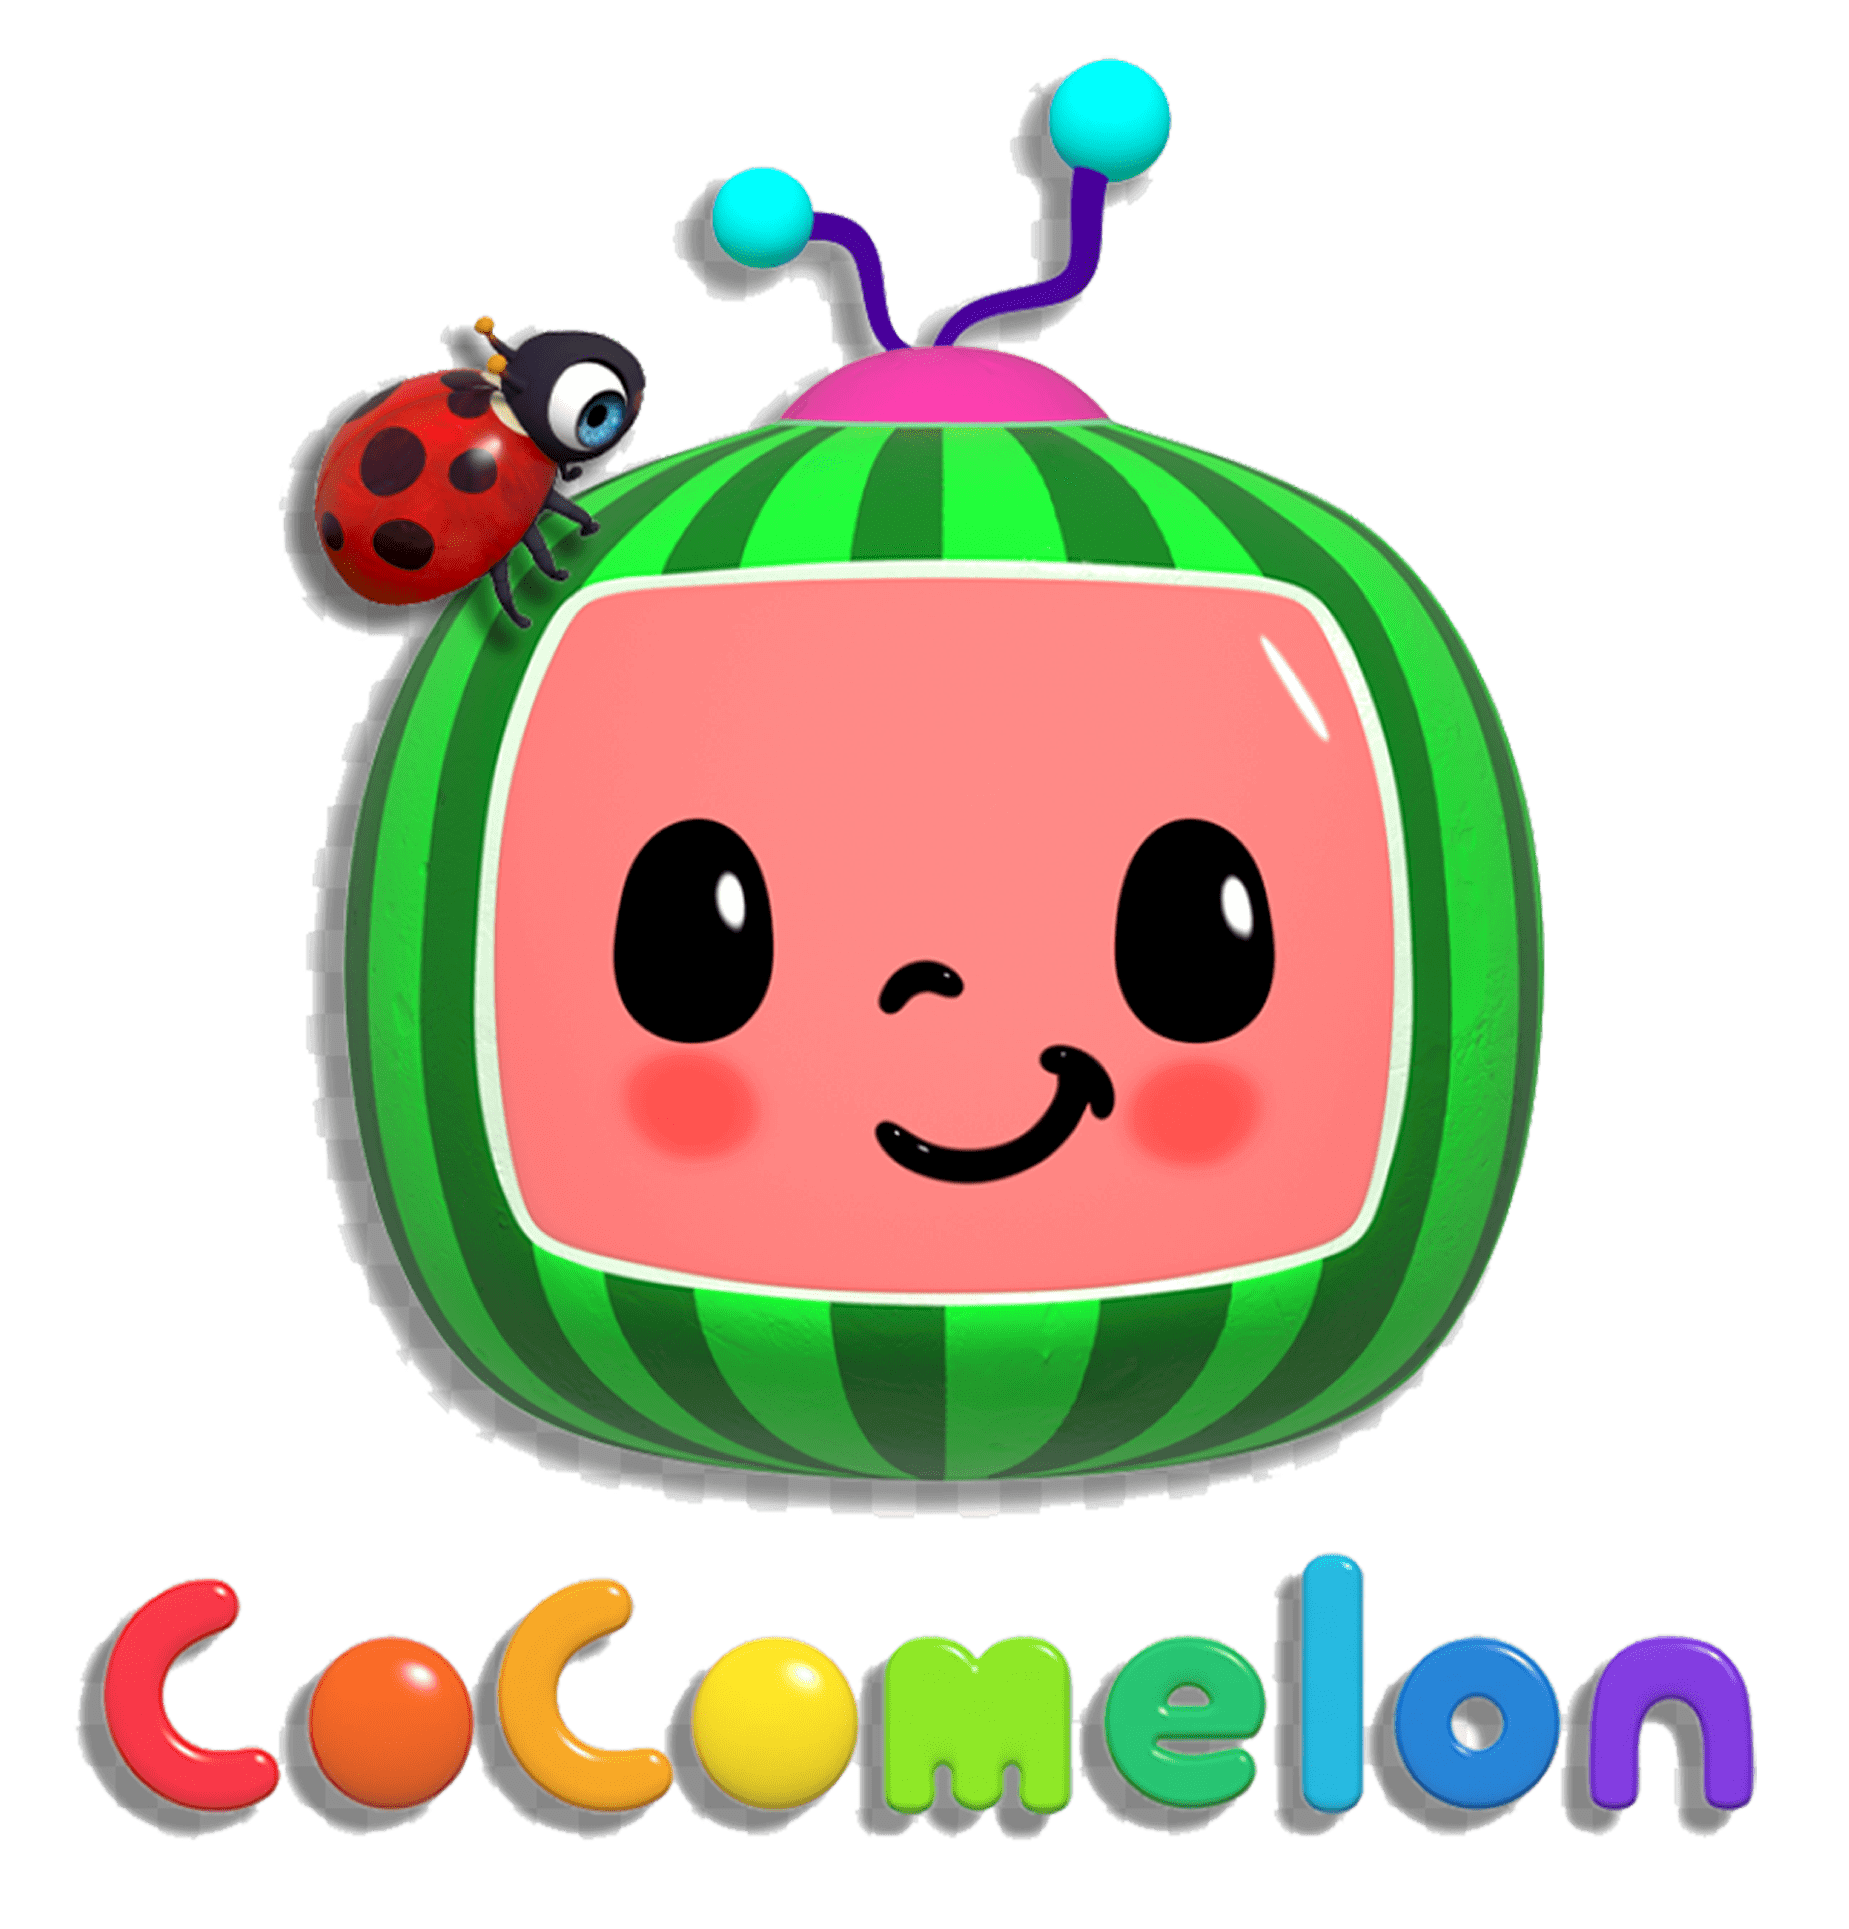 Goofy Ahh, Cocomelon Wiki